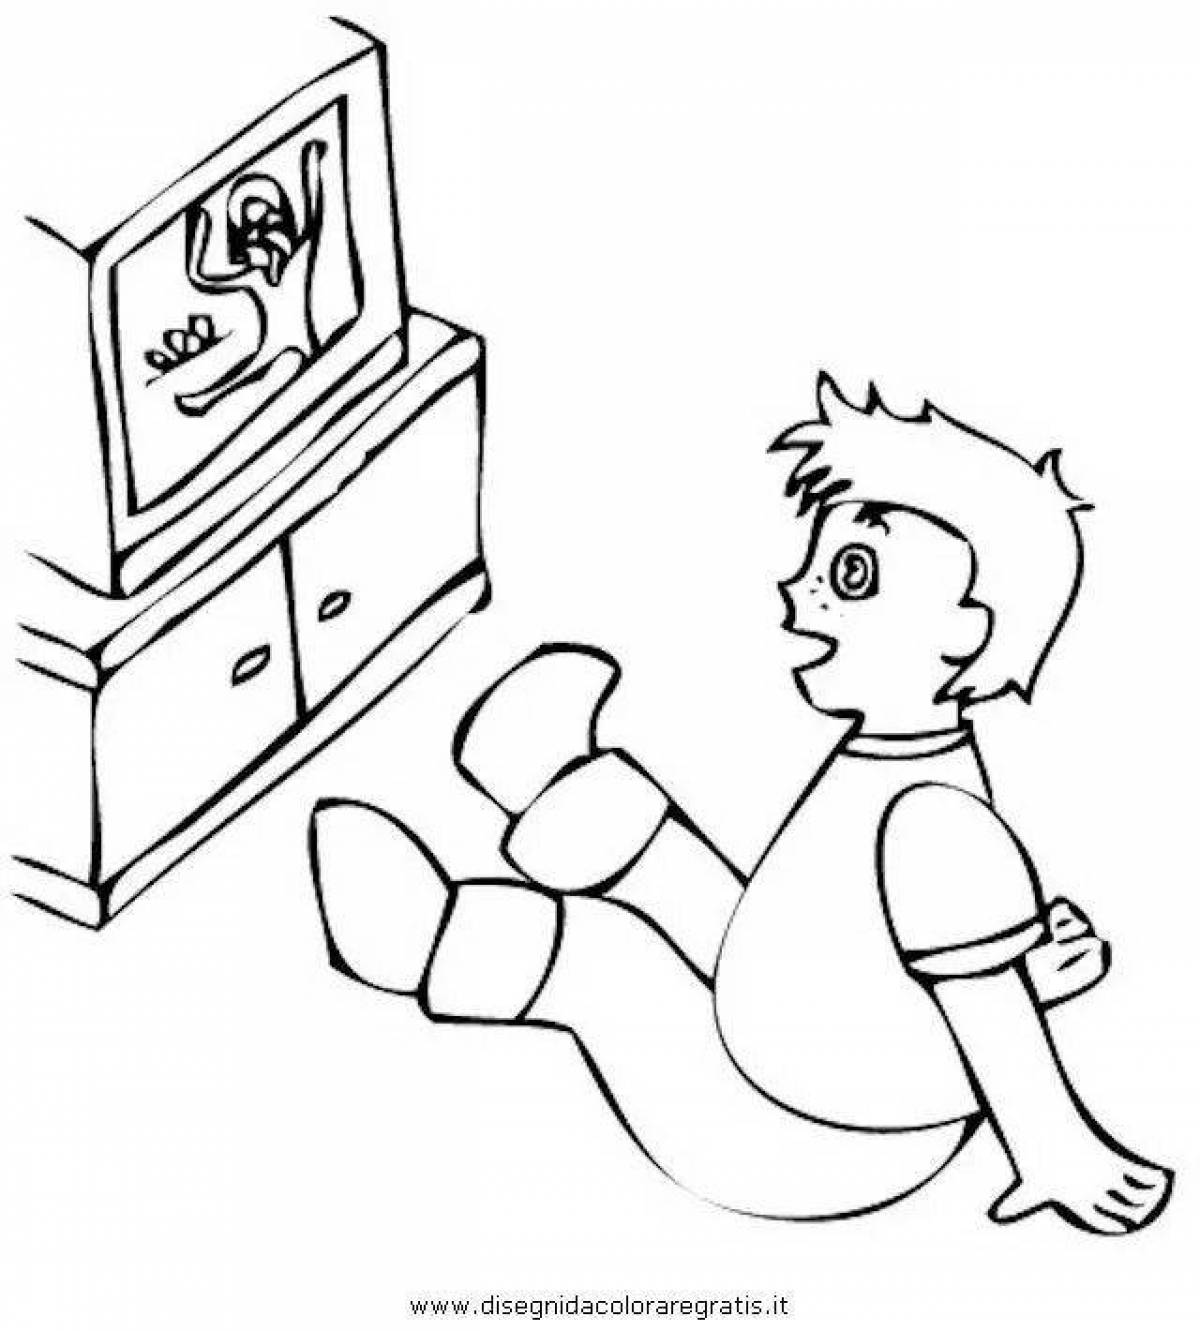 Мальчик и телевизор раскраска для детей